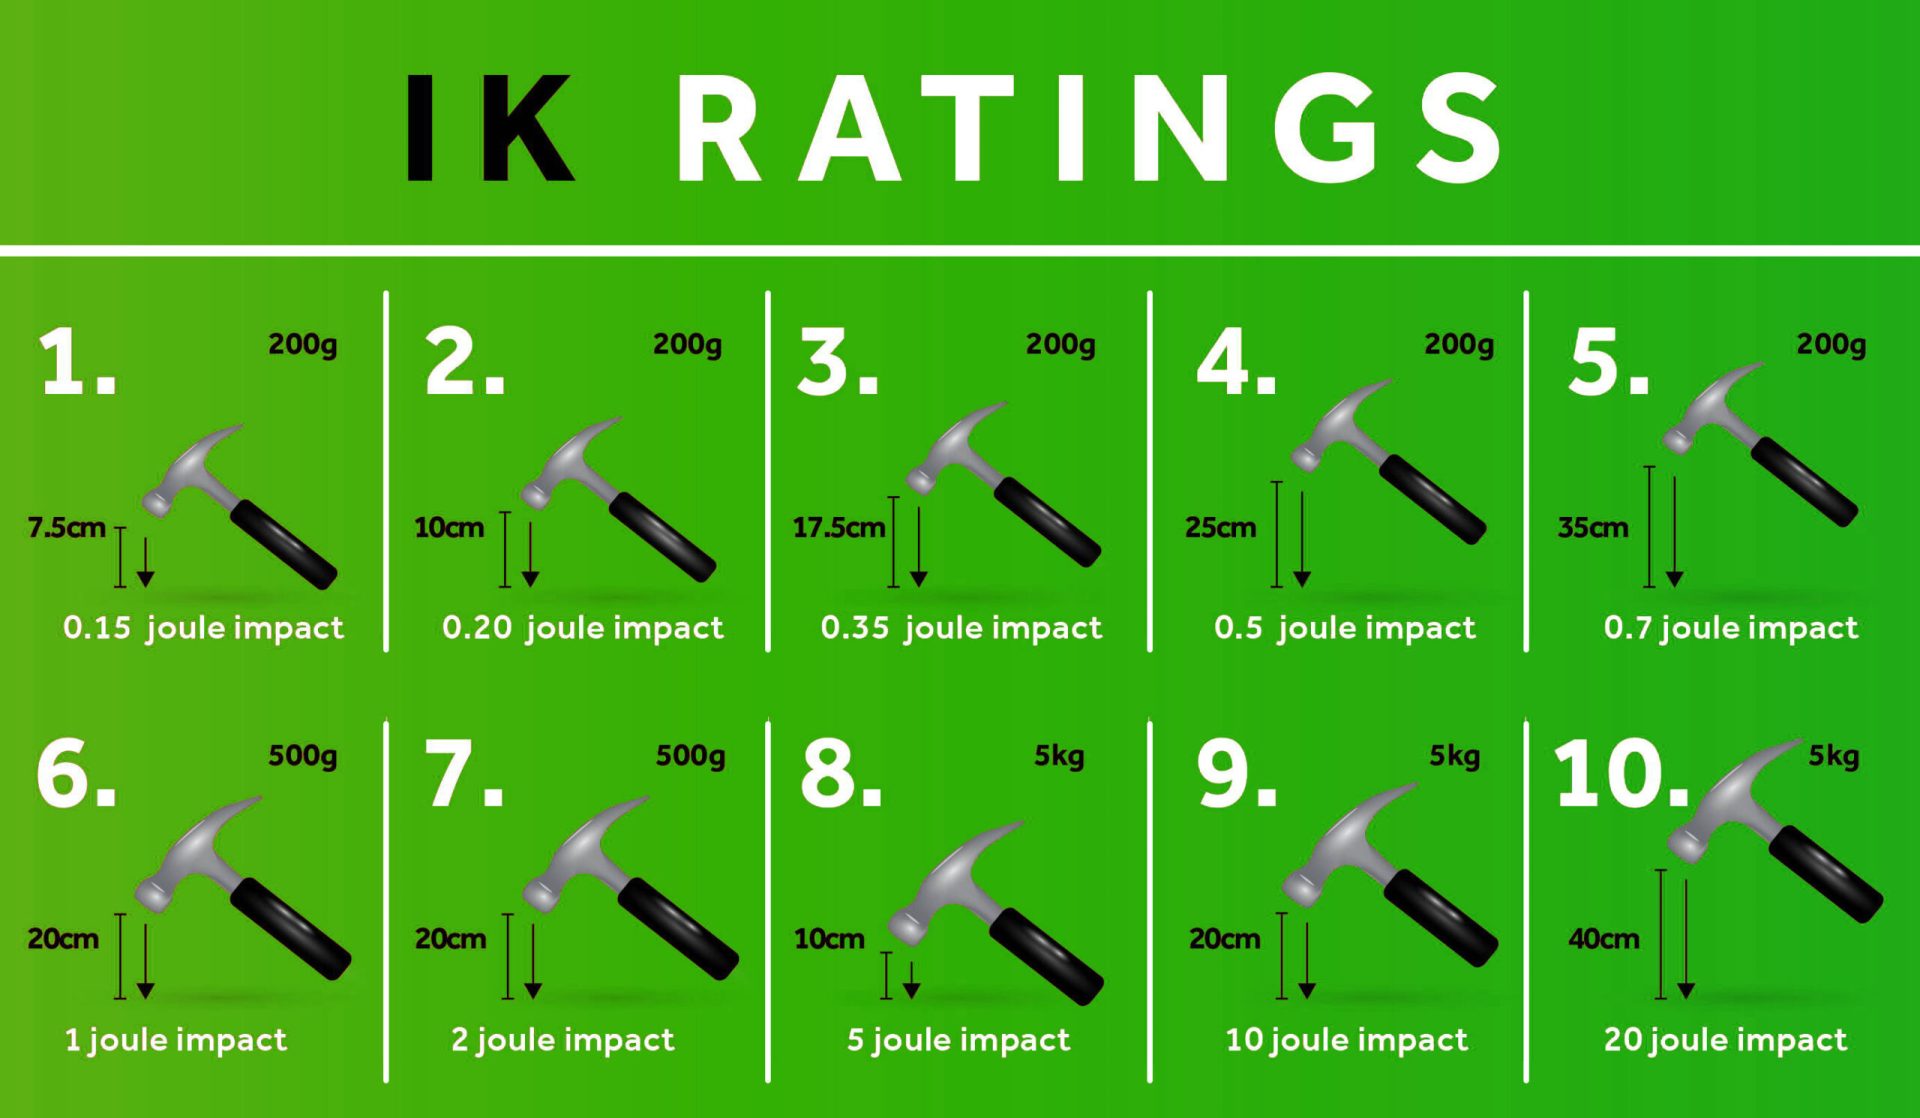 IK Ratings